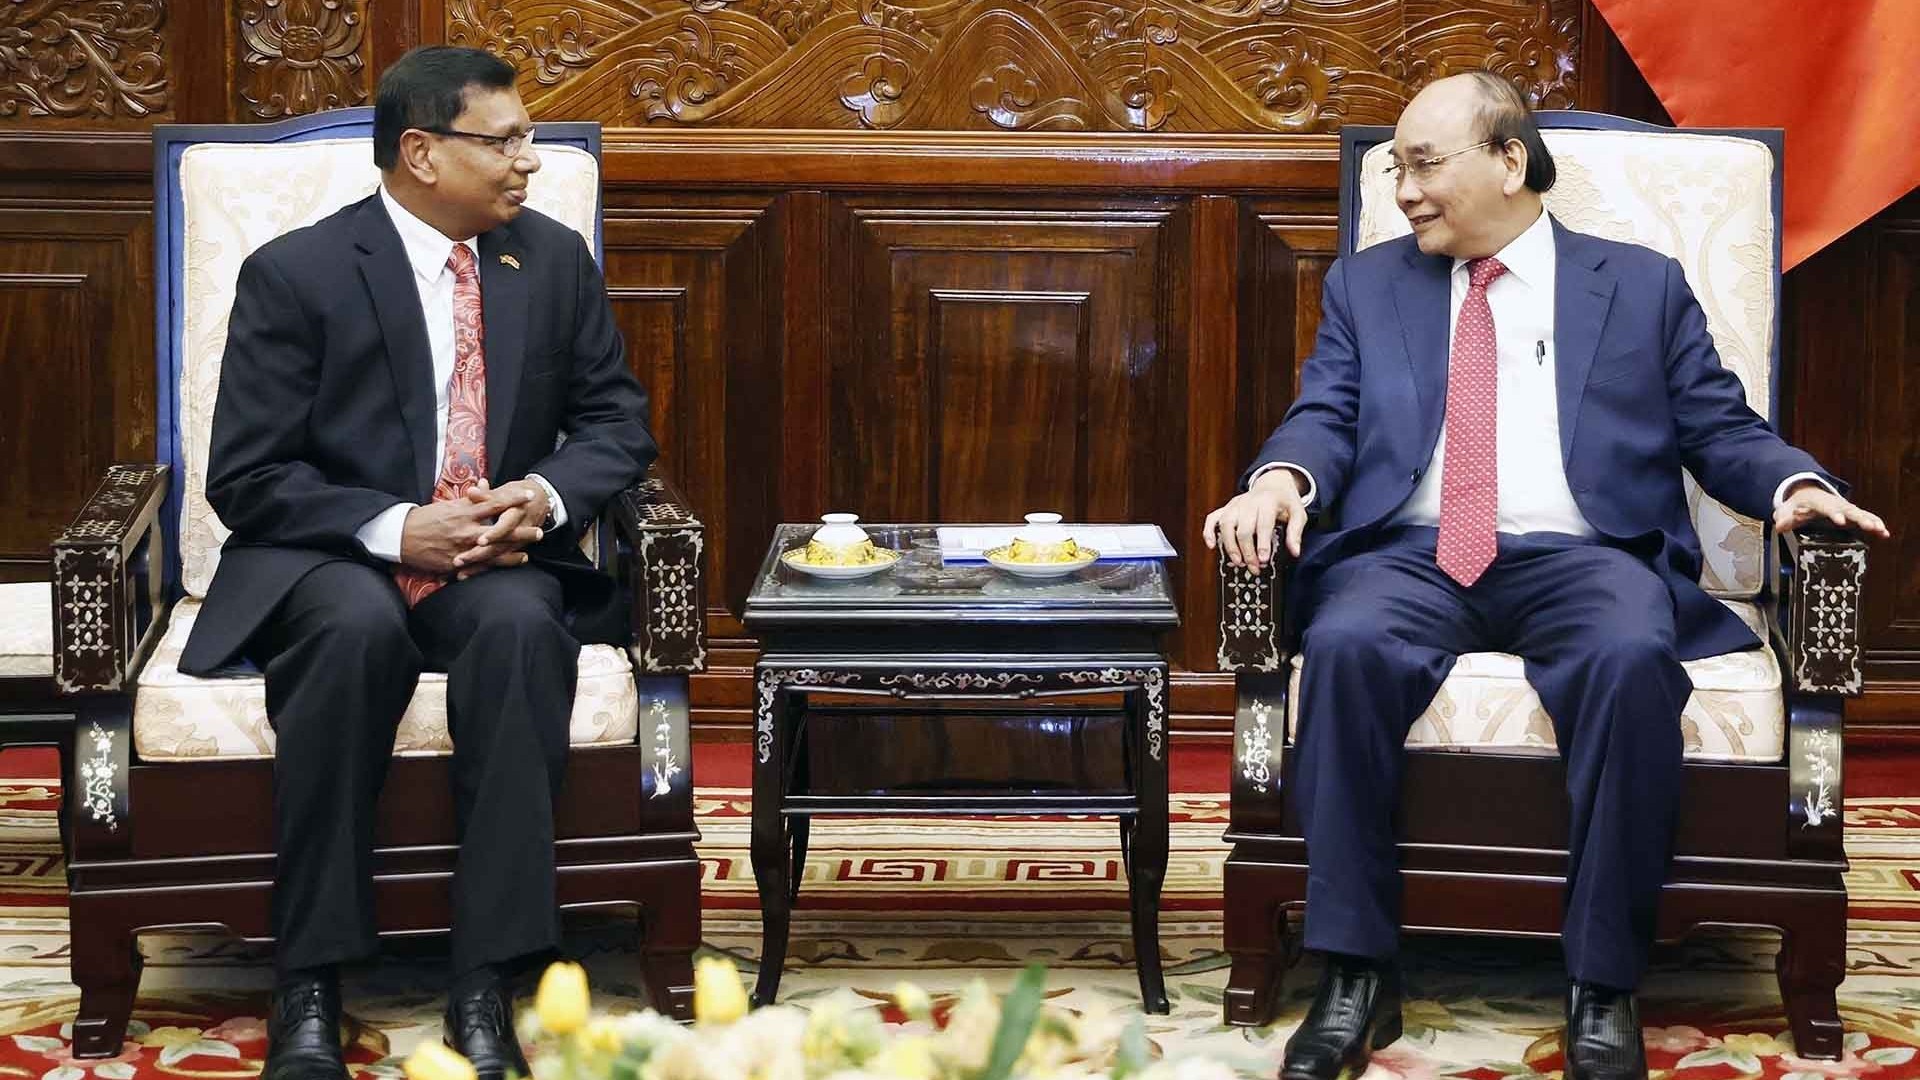 Chủ tịch nước Nguyễn Xuân Phúc tiếp các Đại sứ Sri Lanka và Campuchia chào từ biệt, kết thúc nhiệm kỳ